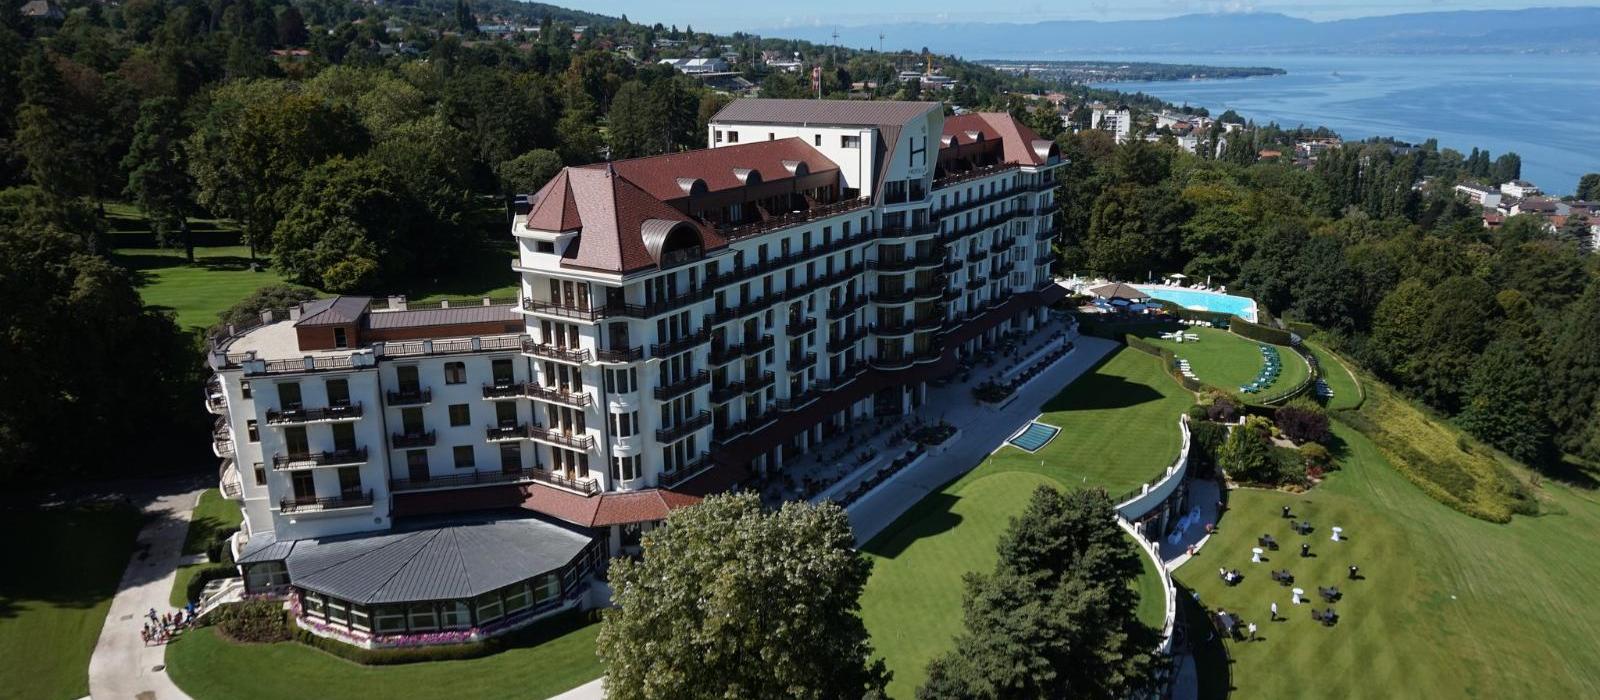 依云皇家度假酒店(Hotel Royal - Evian Resort) 图片  www.lhw.cn